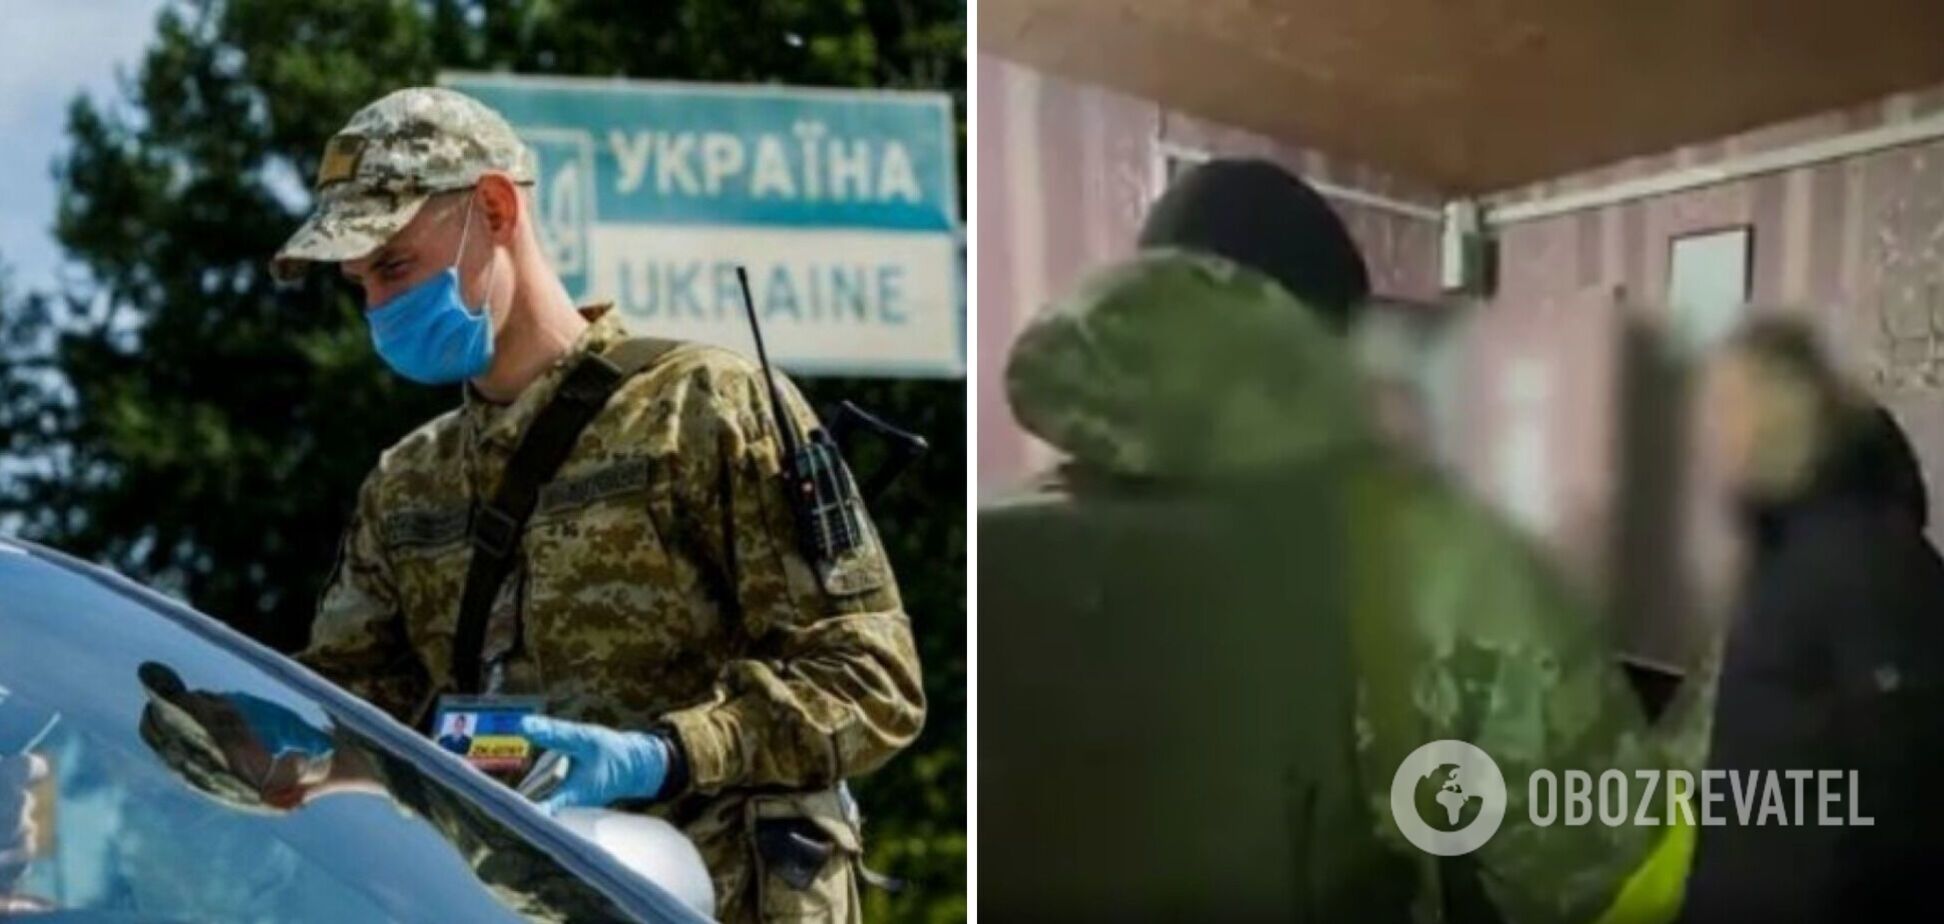 10 мужчин пытались неправомерно покинуть Украину